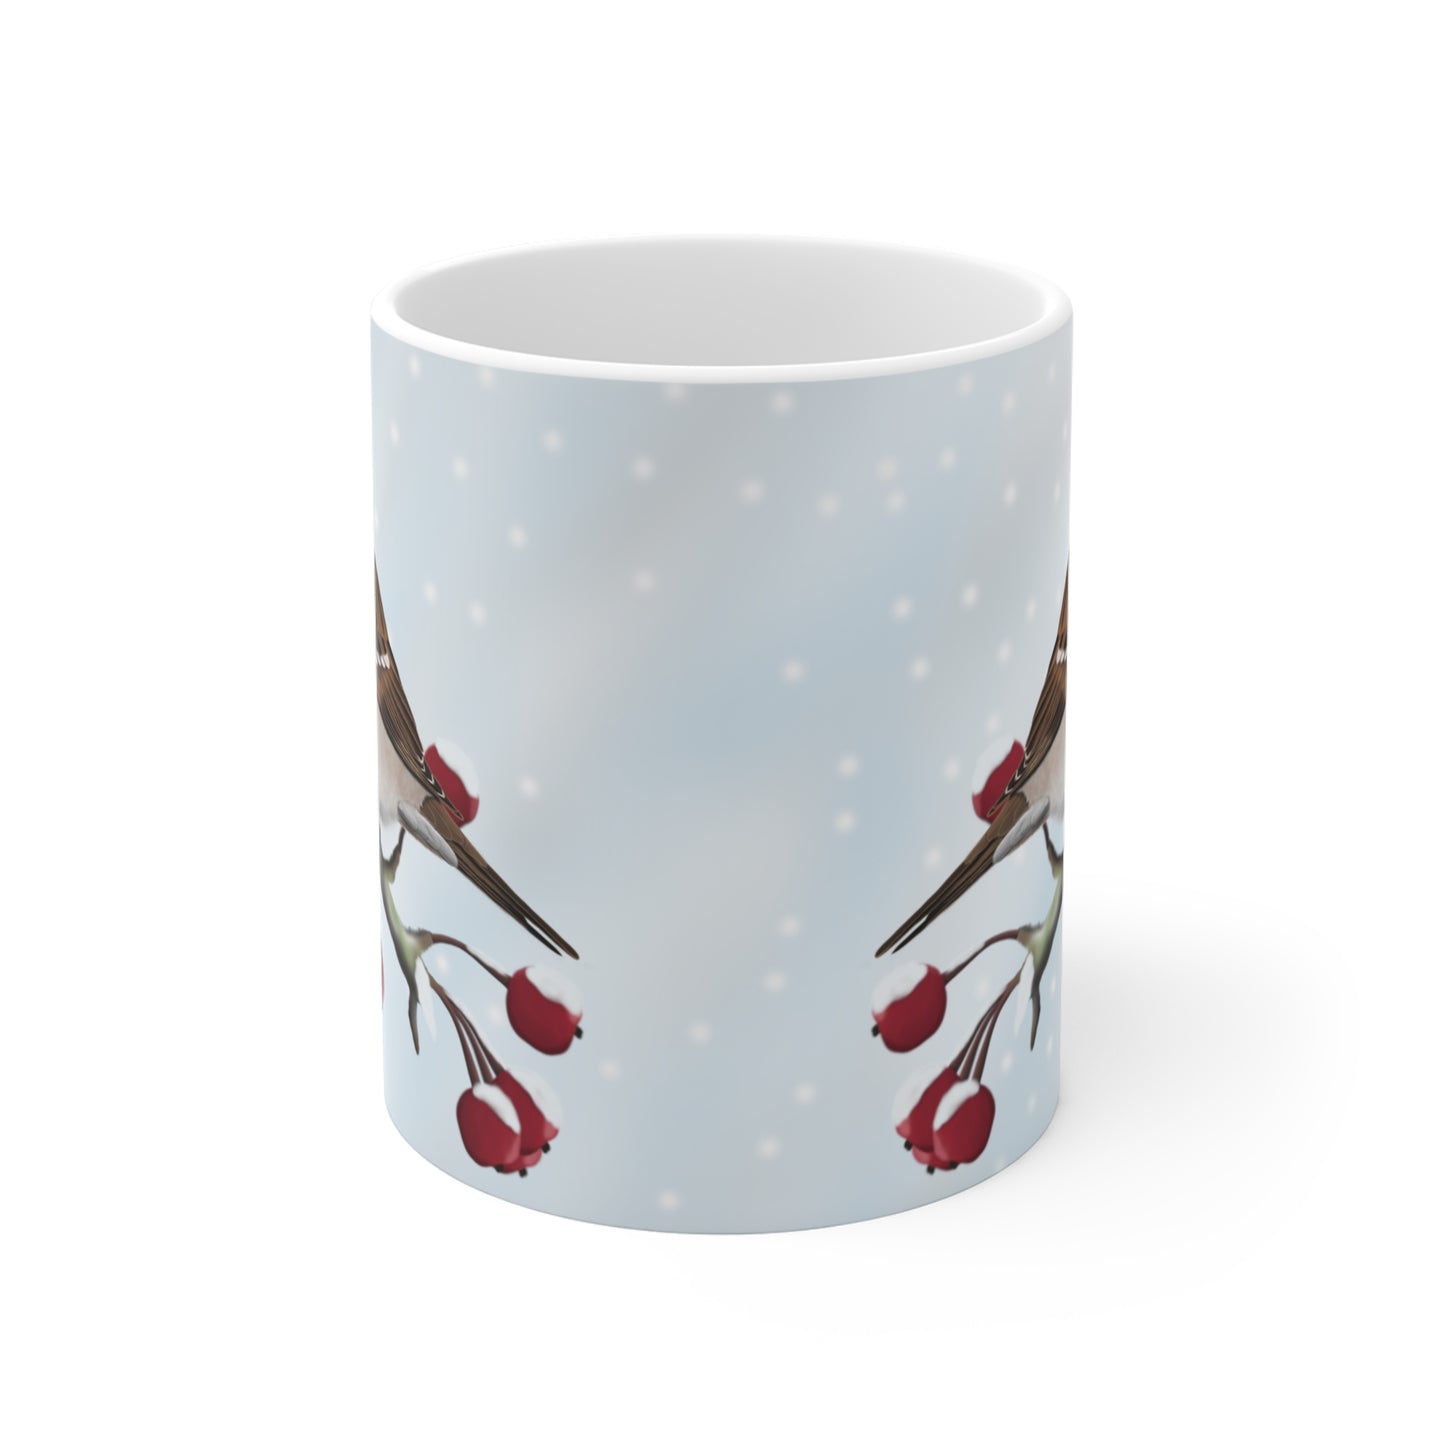 Sparrow Winter Bird Ceramic Mug 11oz